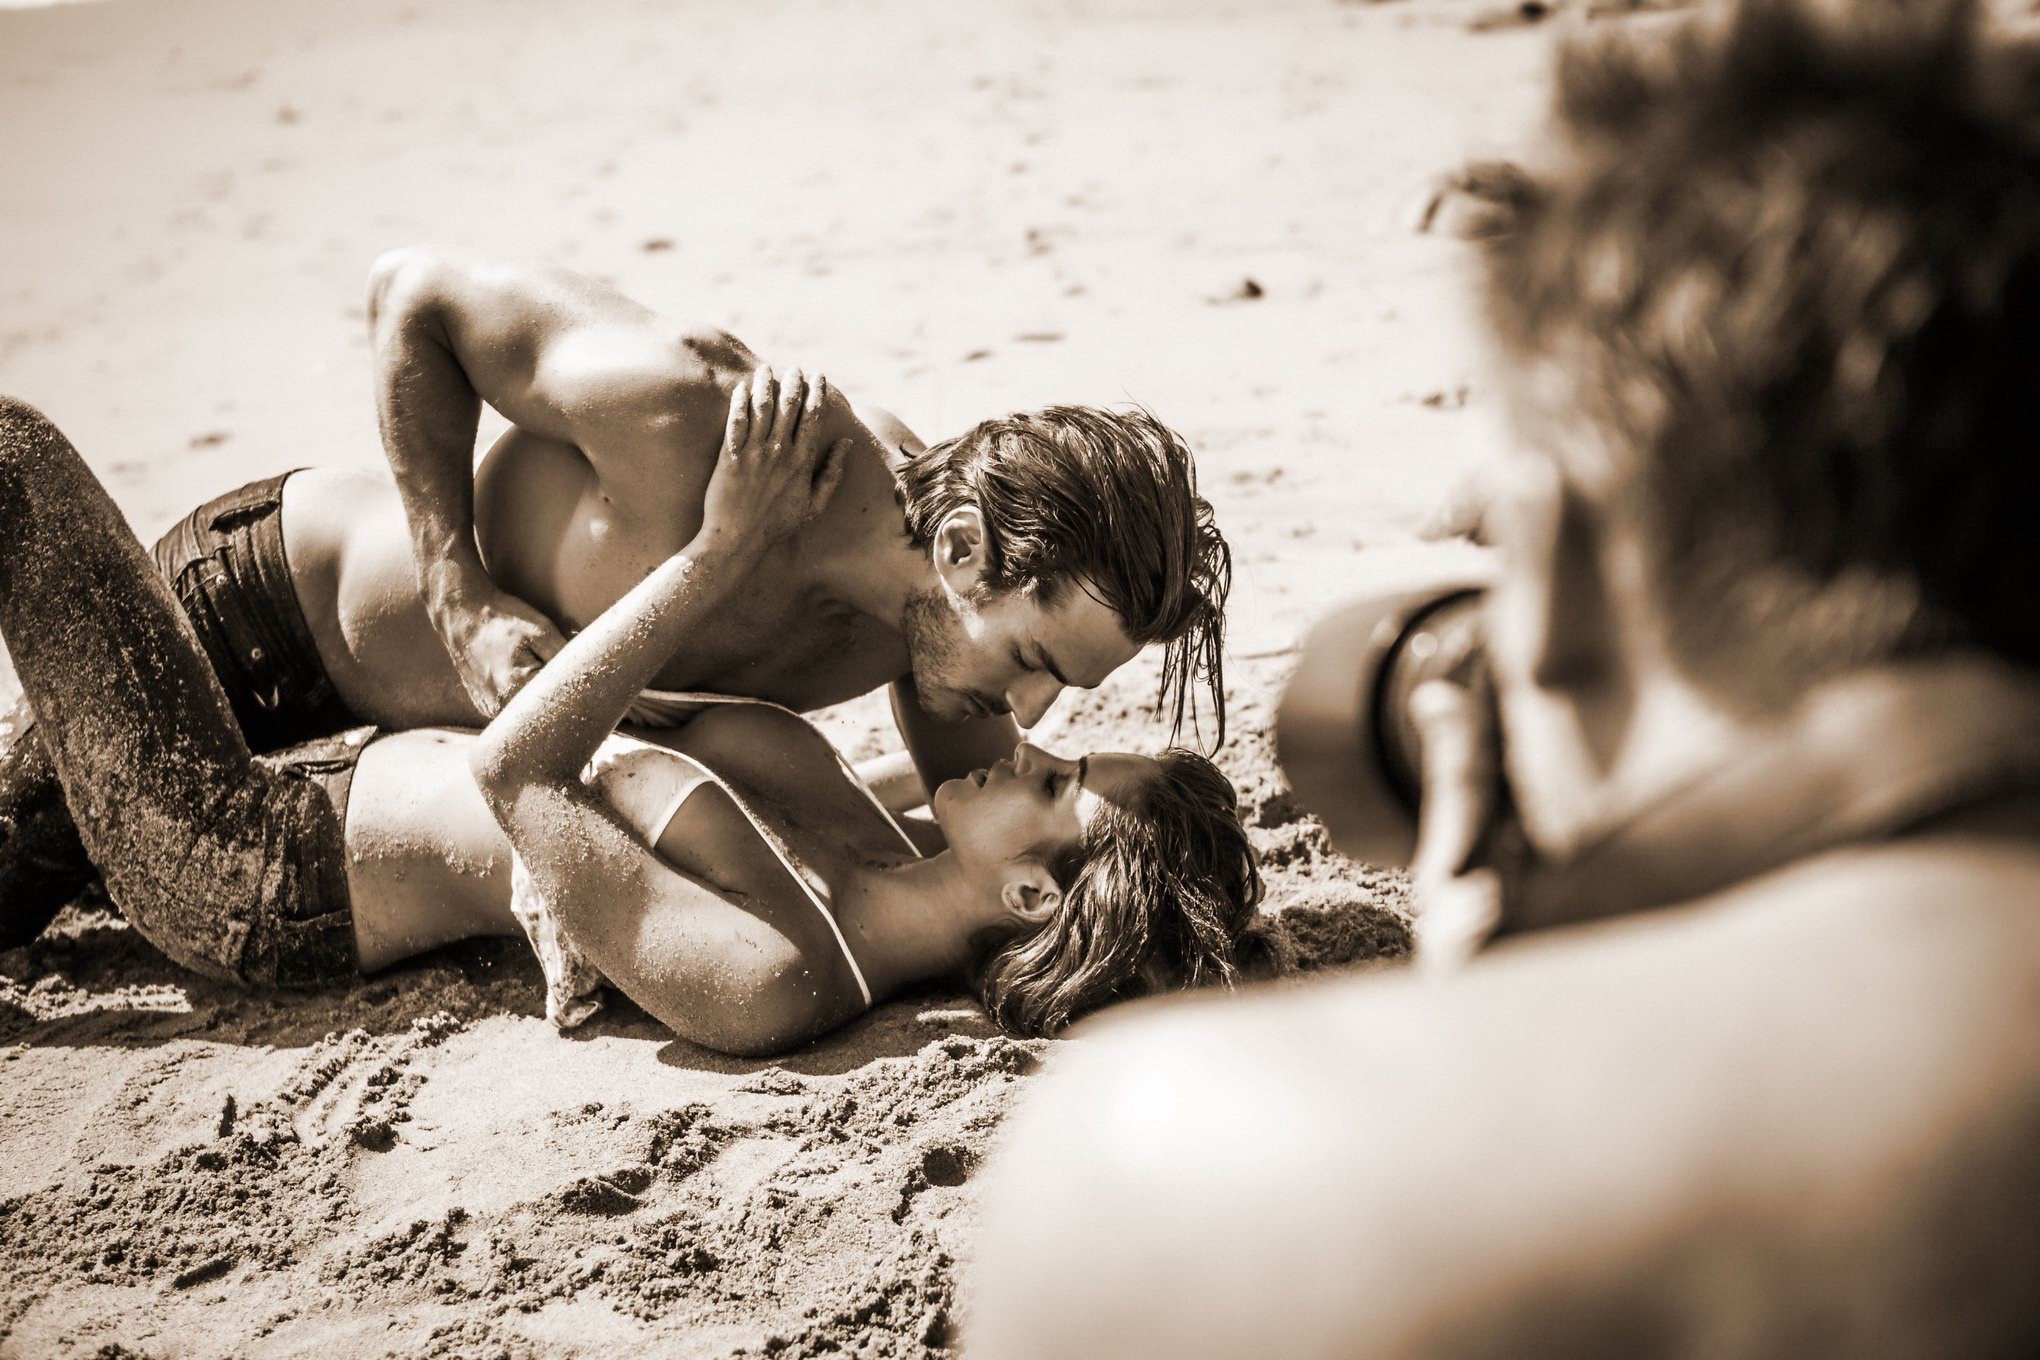 Jehane gigi paris totalmente desnuda acariciando en la playa photoshoot por steve shaw
 #75181071